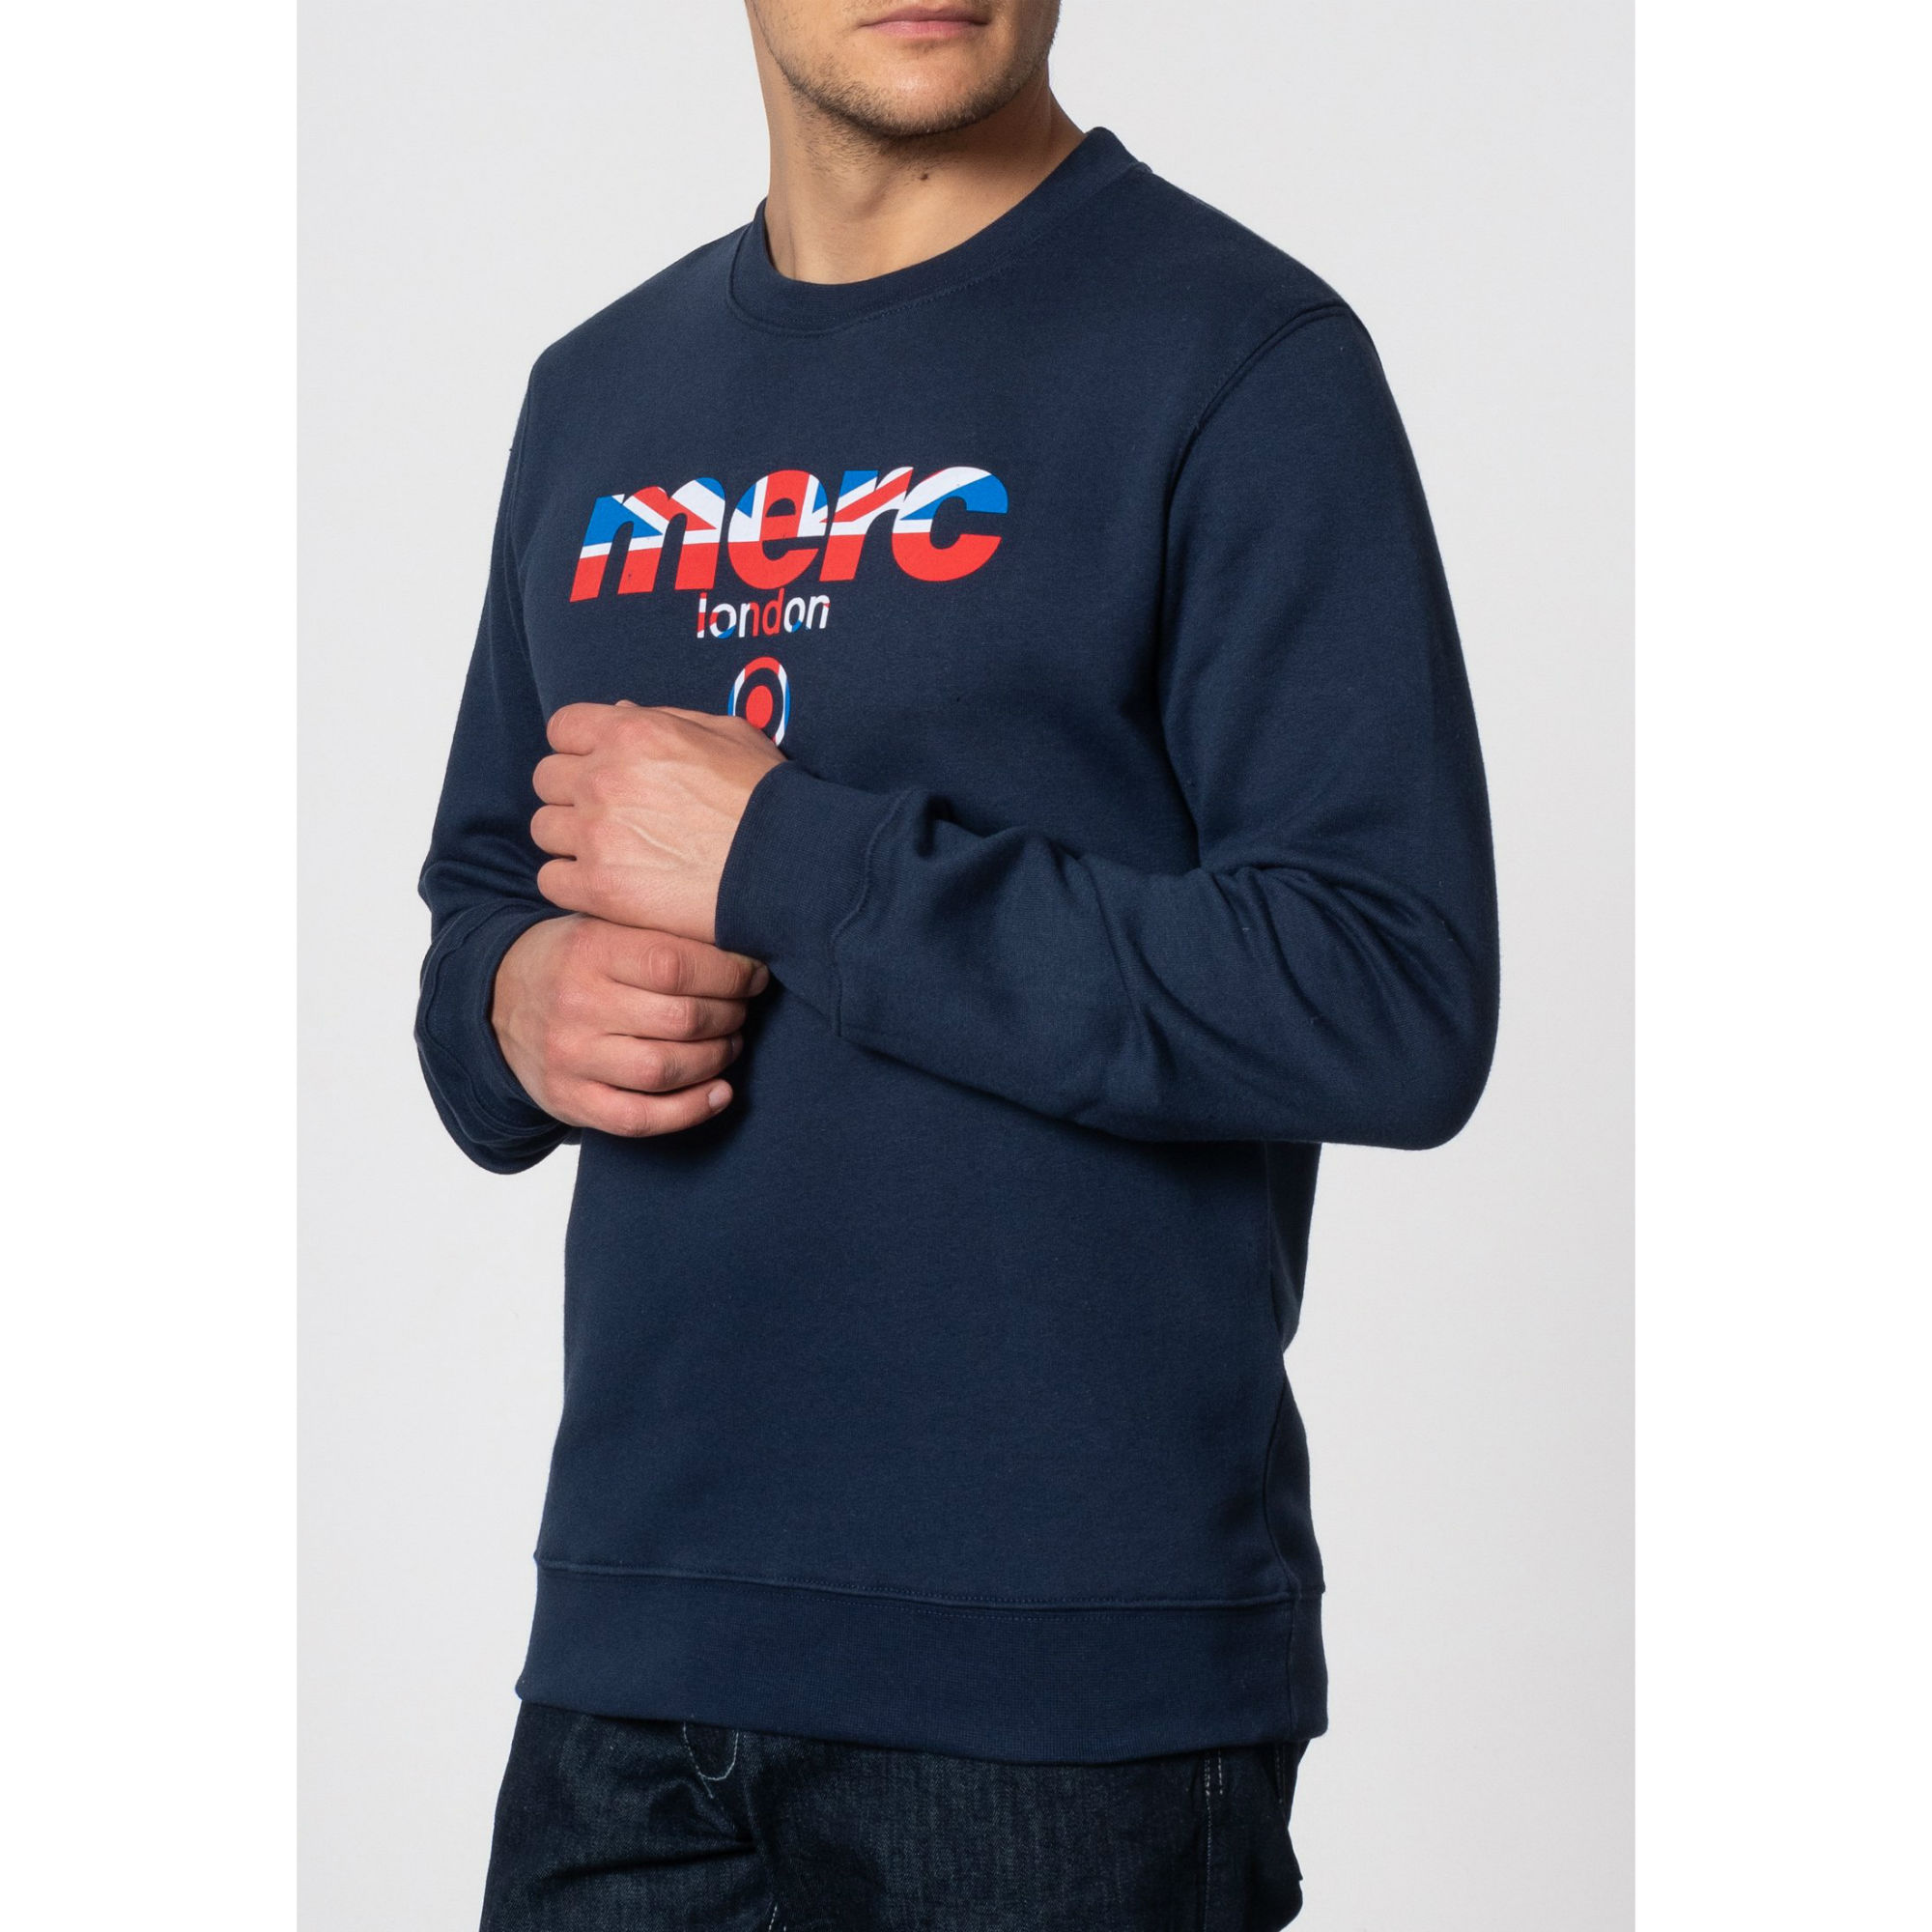 Мужская толстовка свитшот из хлопчатобумажного материала Otto синего цвета, бренда MERC, купить на официальном сайте 